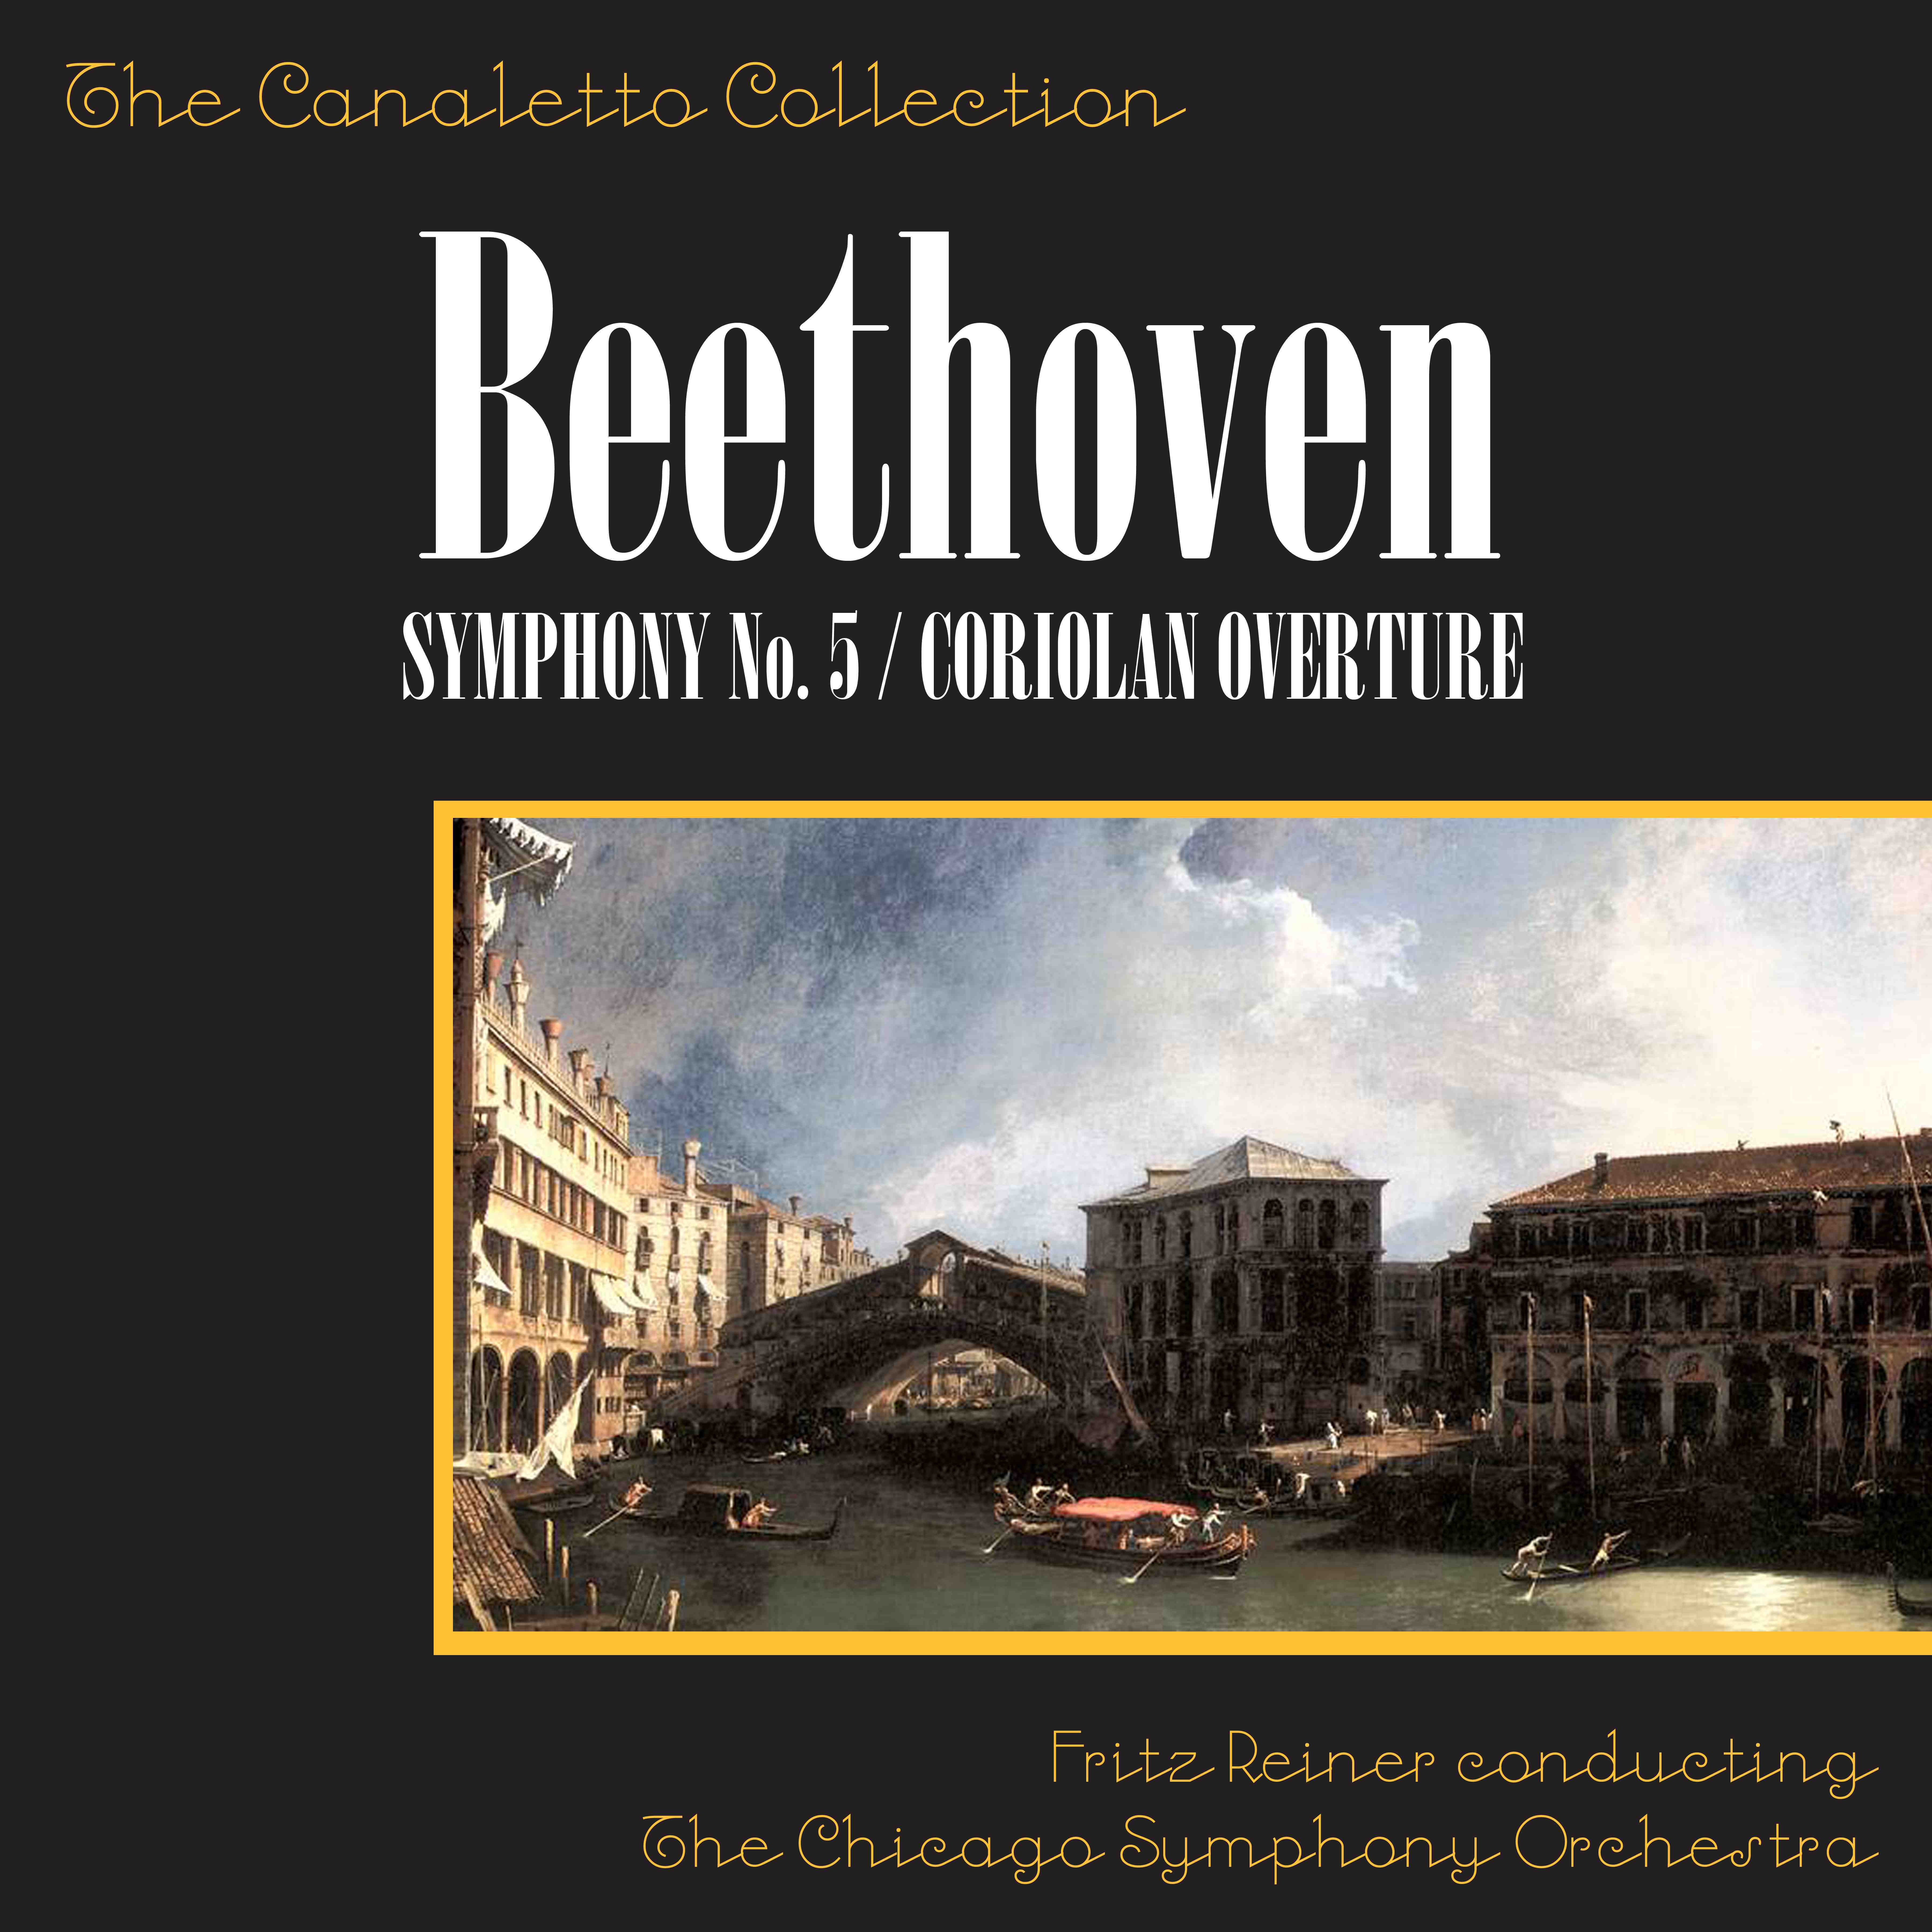 Beethoven: Cariolan Overture, Op. 62